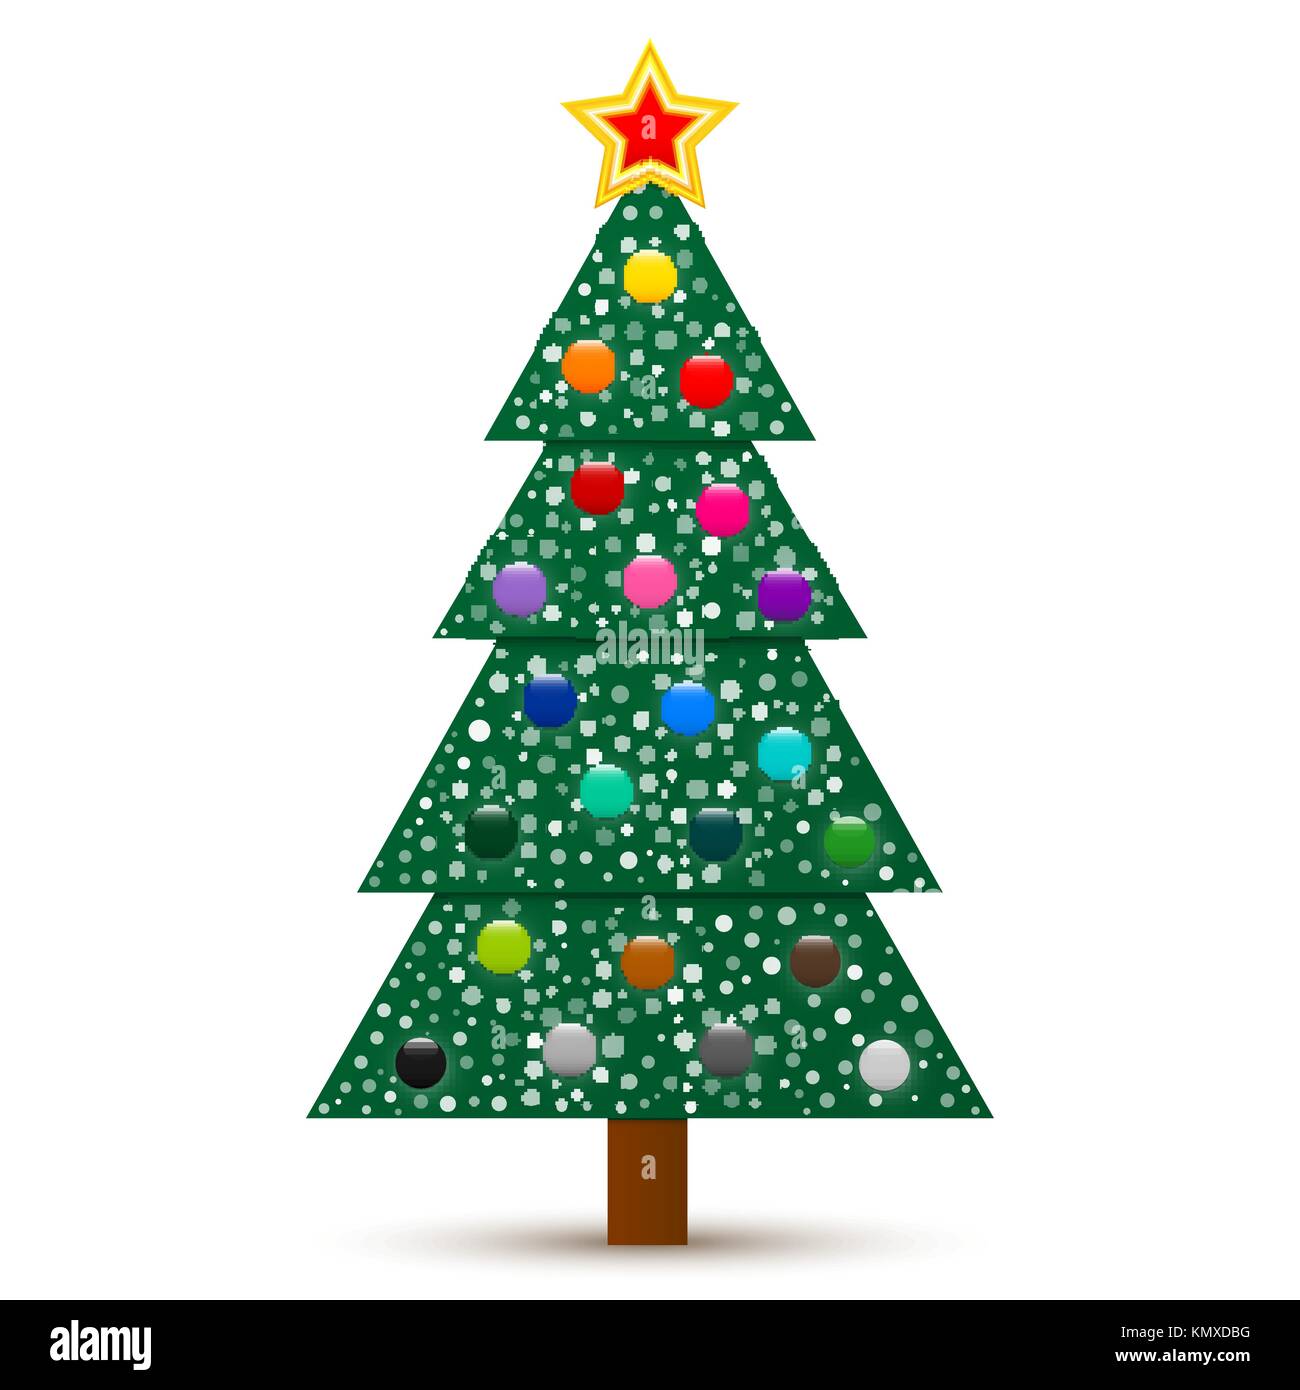 Vektor abstrakte geschmückten Weihnachtsbaum mit Stern, Bälle und Schnee auf weißem Hintergrund. Stock Vektor